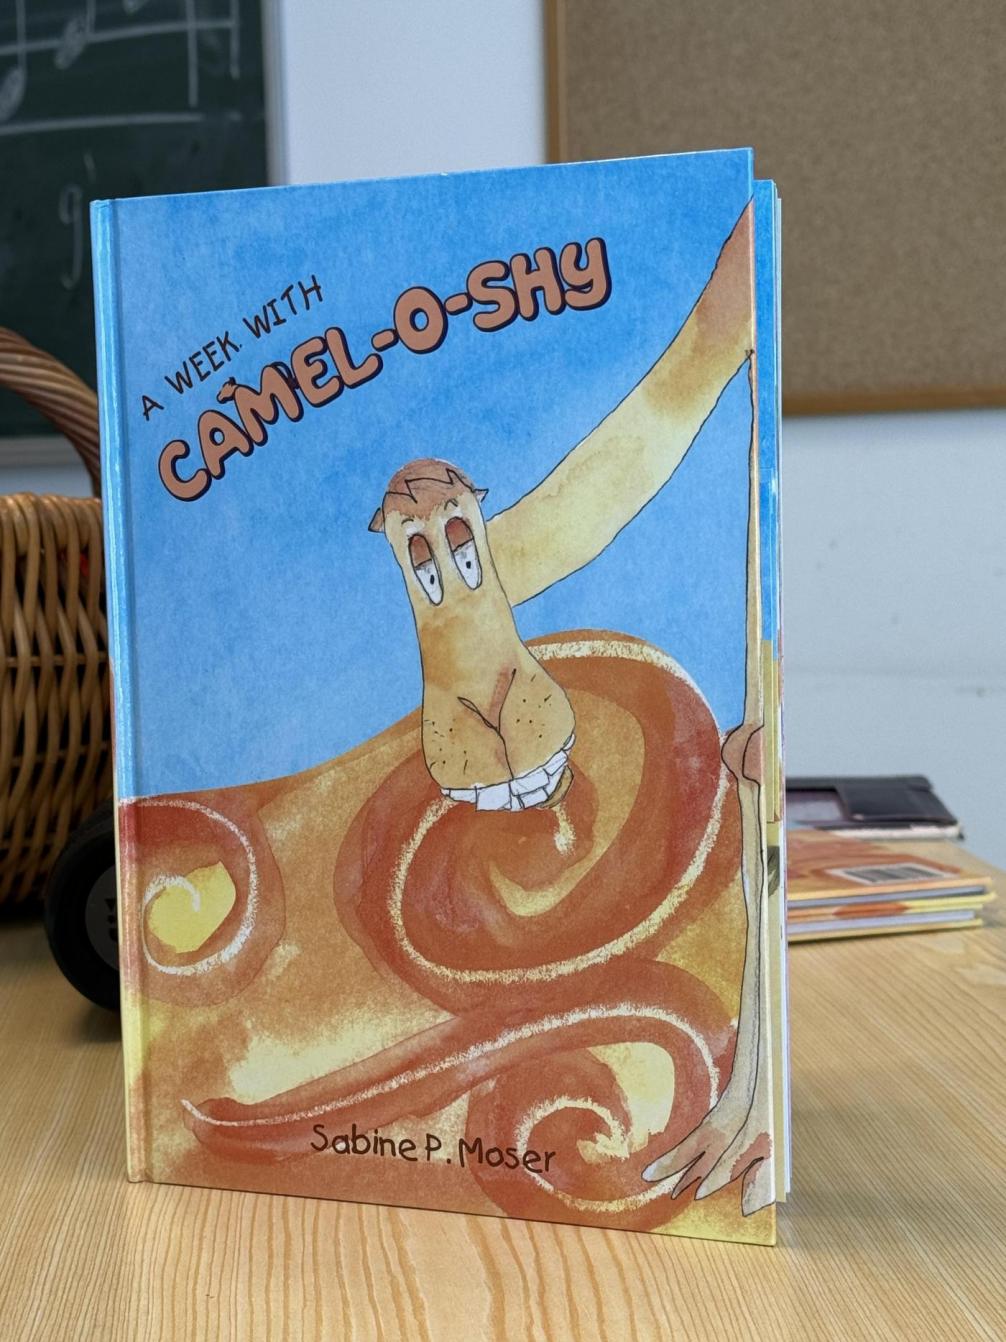 Autorenlesung Camel-O-Shy